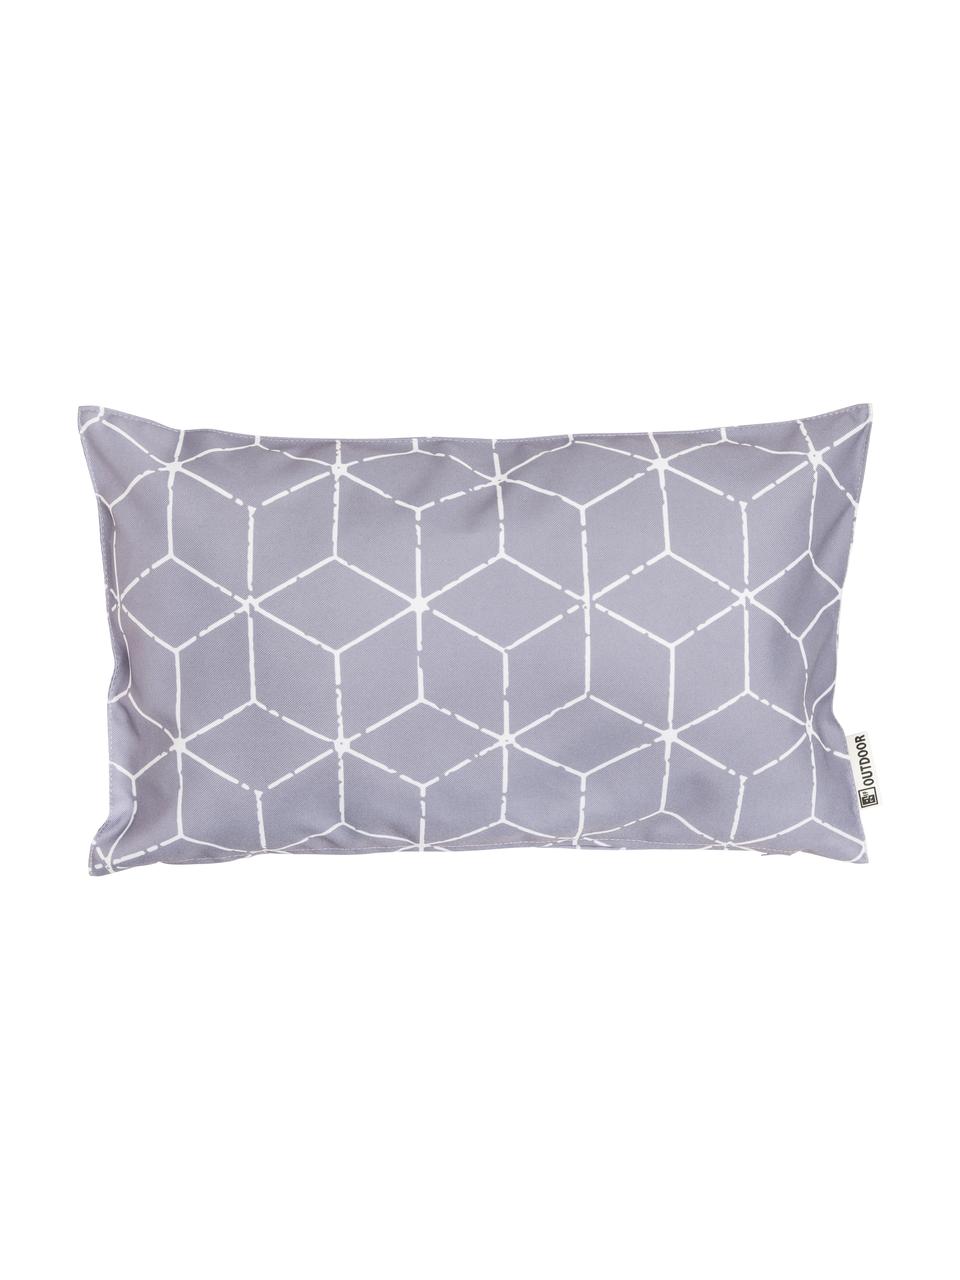 Outdoor-Kissen Cube mit grafischem Muster in Grau/Weiss, mit Inlett, 100% Polyester, Grau, Weiss, 30 x 50 cm